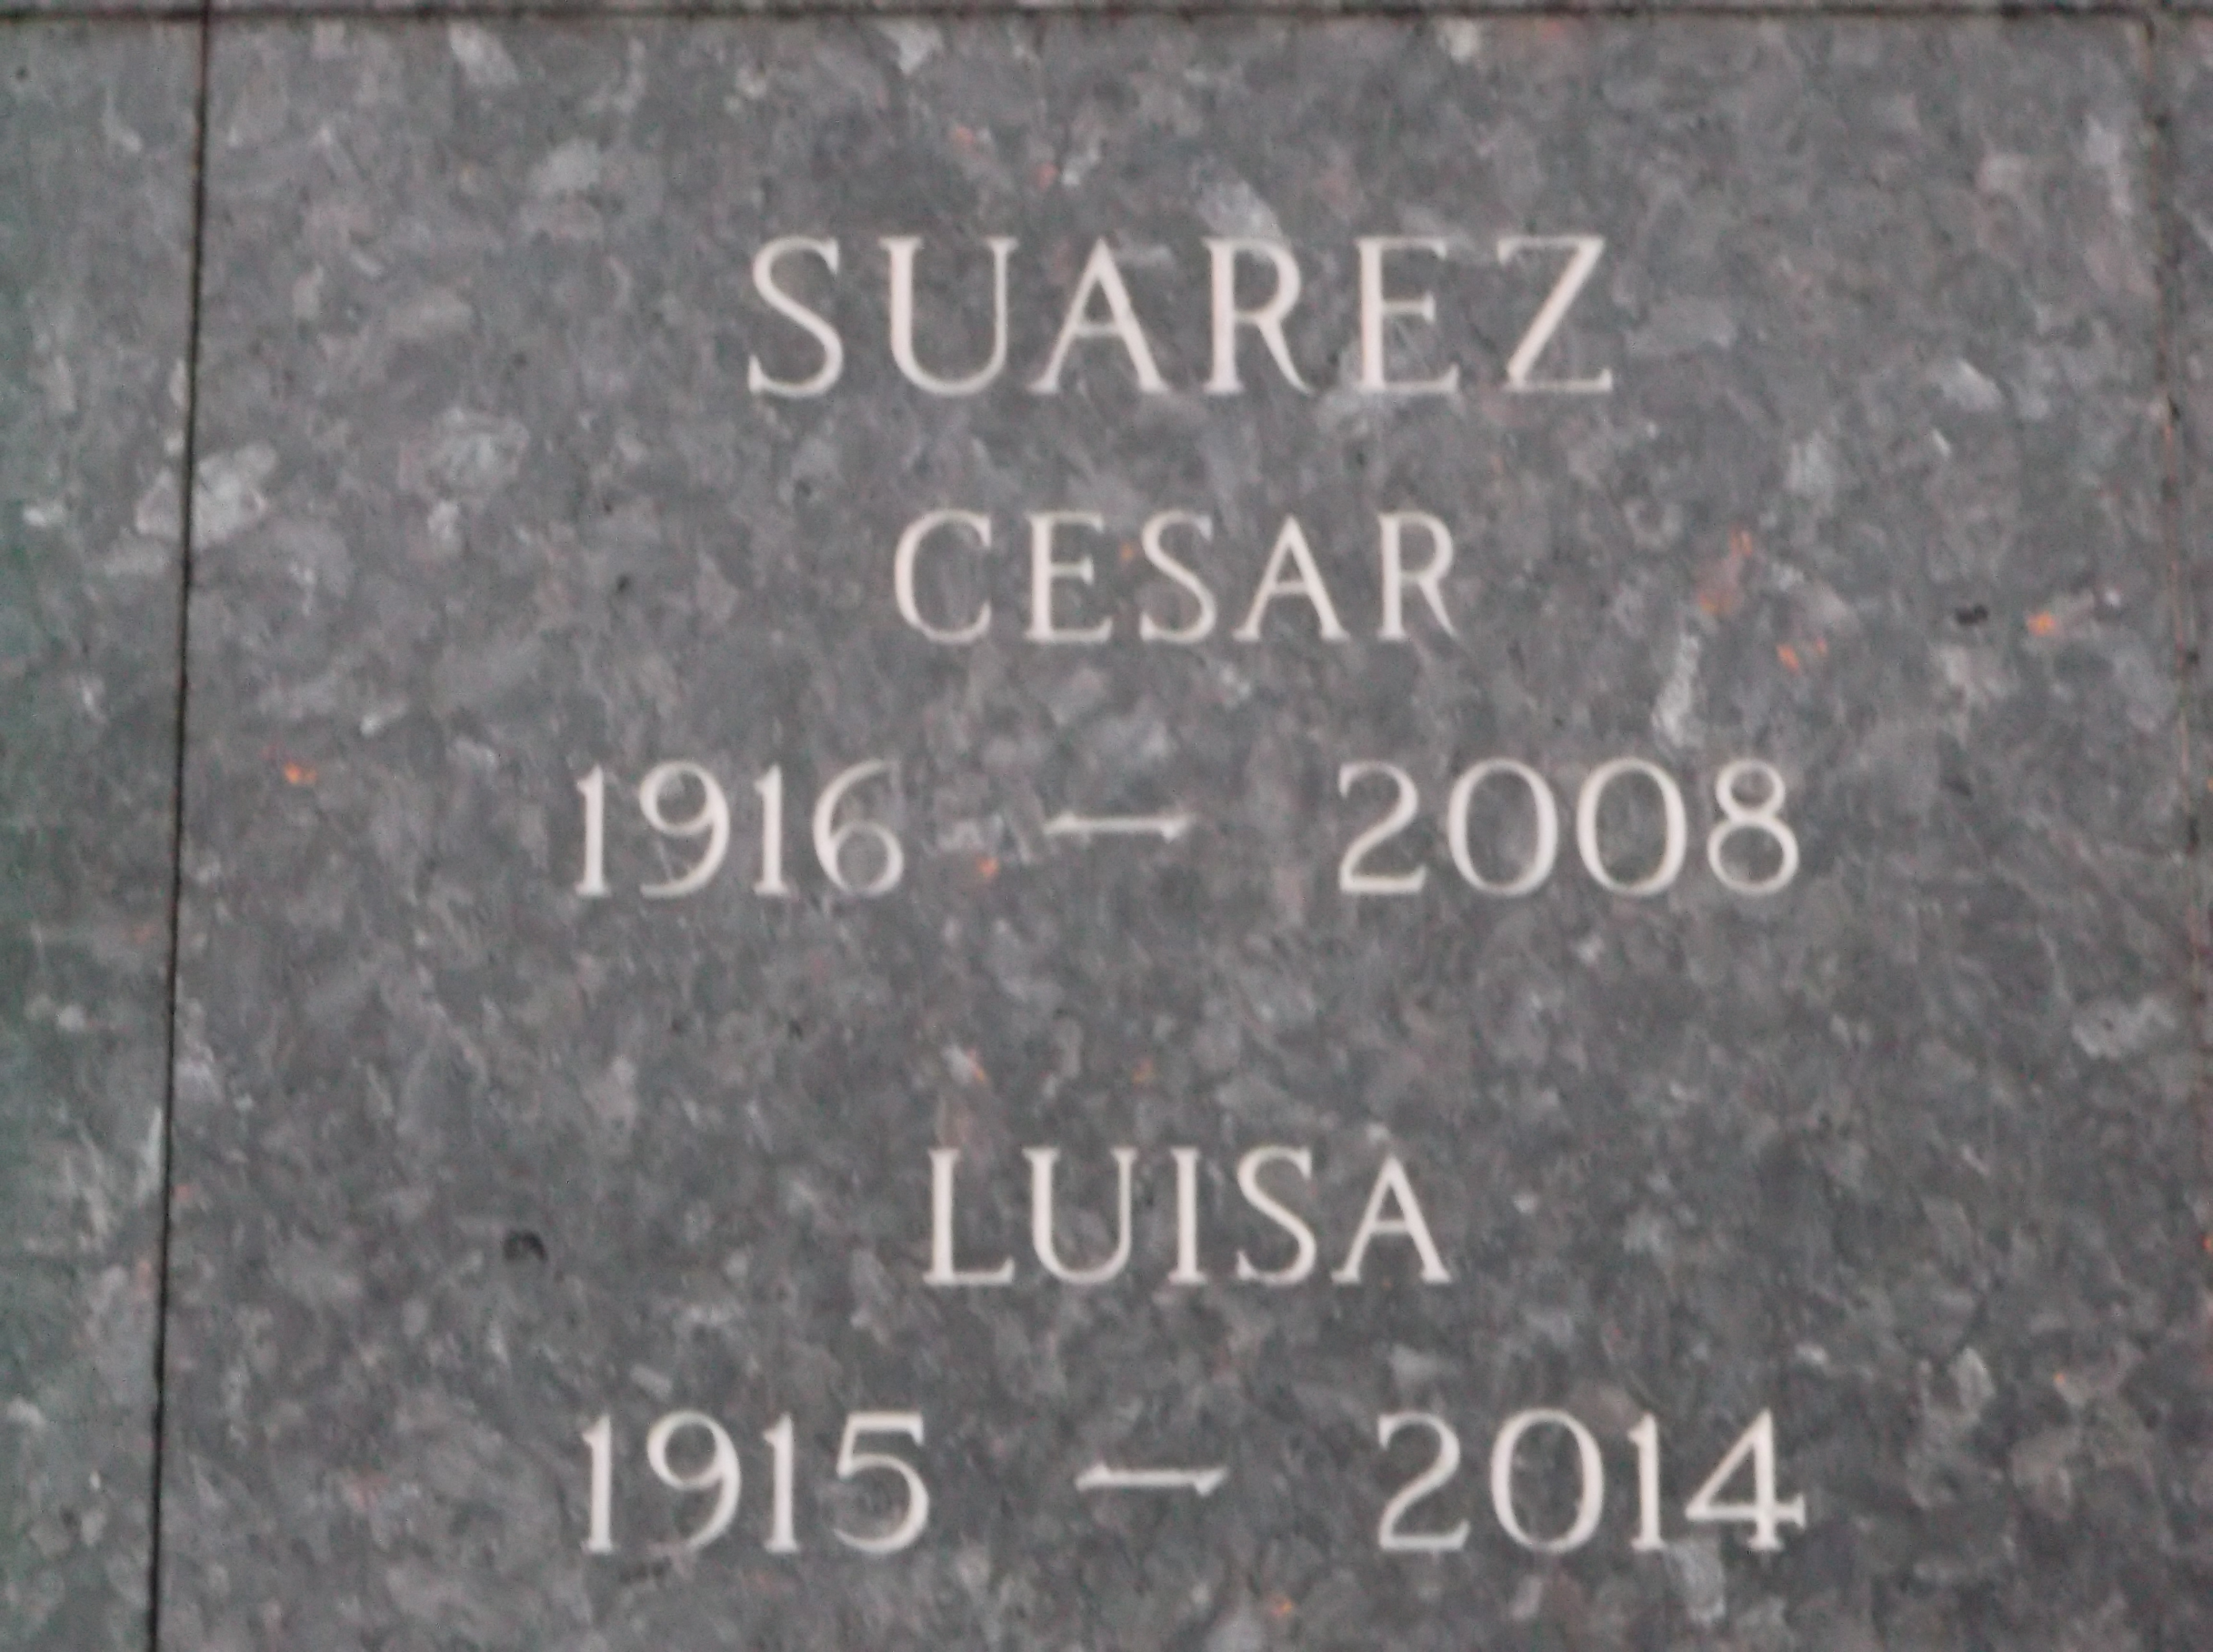 Cesar Suarez